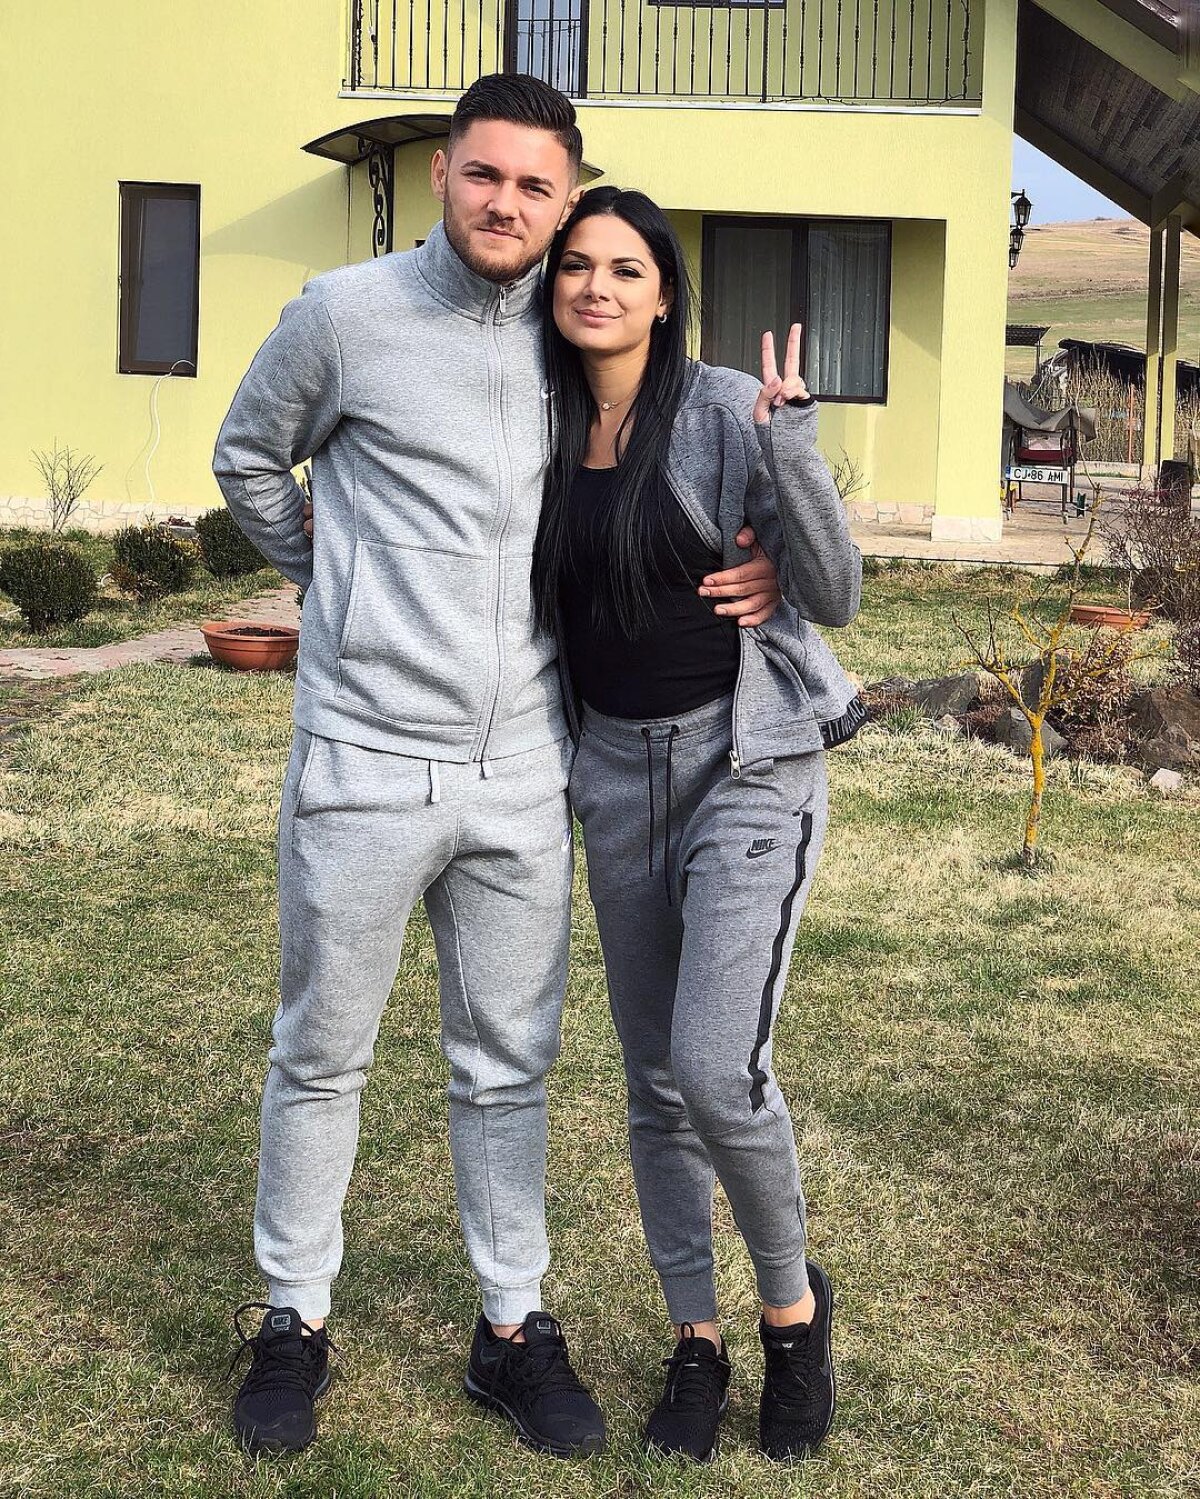 FOTO Alex Ioniță a punctat decisiv în plan personal: a cerut-o pe Adriana de soție după 8 luni de relație